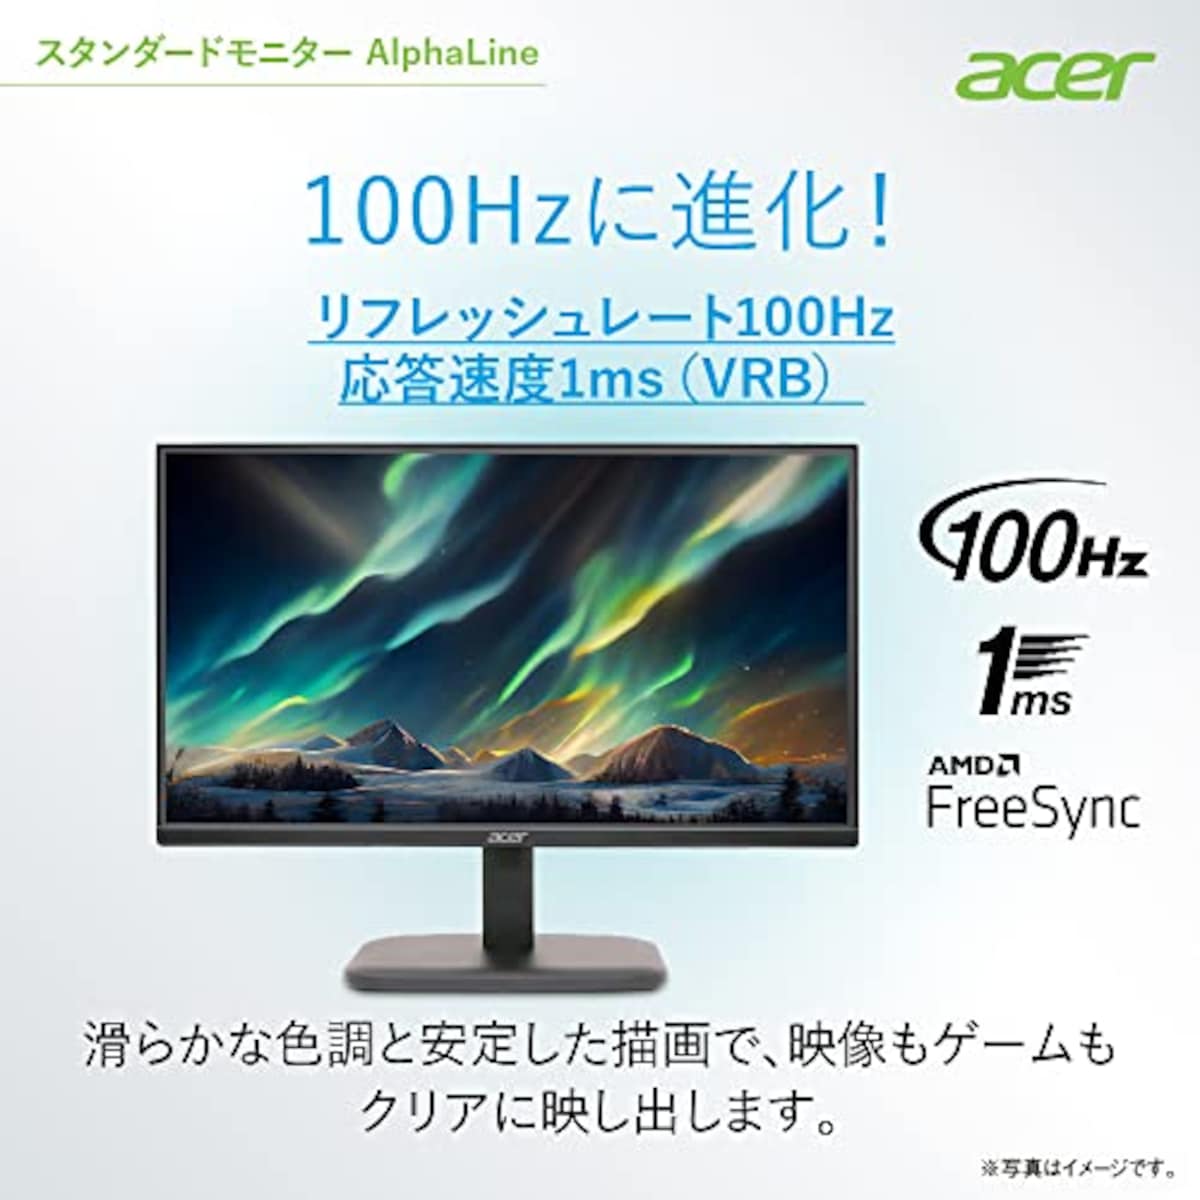  日本エイサー Acer モニター AlphaLine EK221QHbi 21.5インチ VA 非光沢 フルHD 100Hz 1ms(VRB) HDMI ミニD-Sub15 スピーカー非搭載 ヘッドホン端子非搭載 AMD FreeSync画像3 